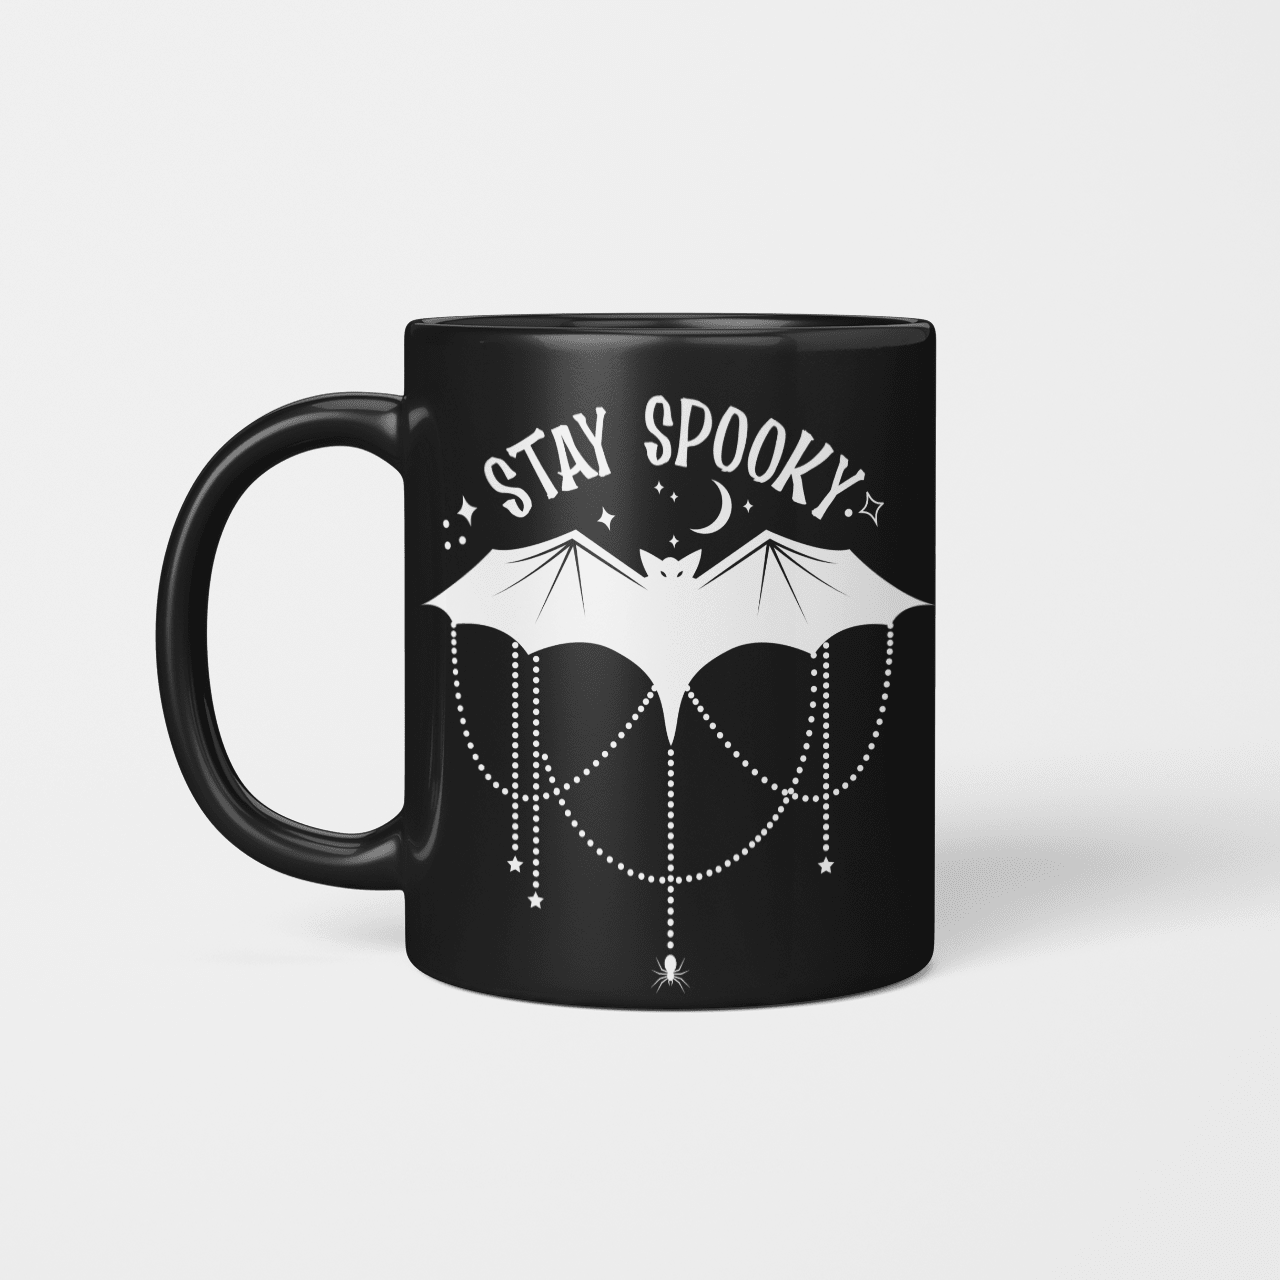 Bat Spooky mug